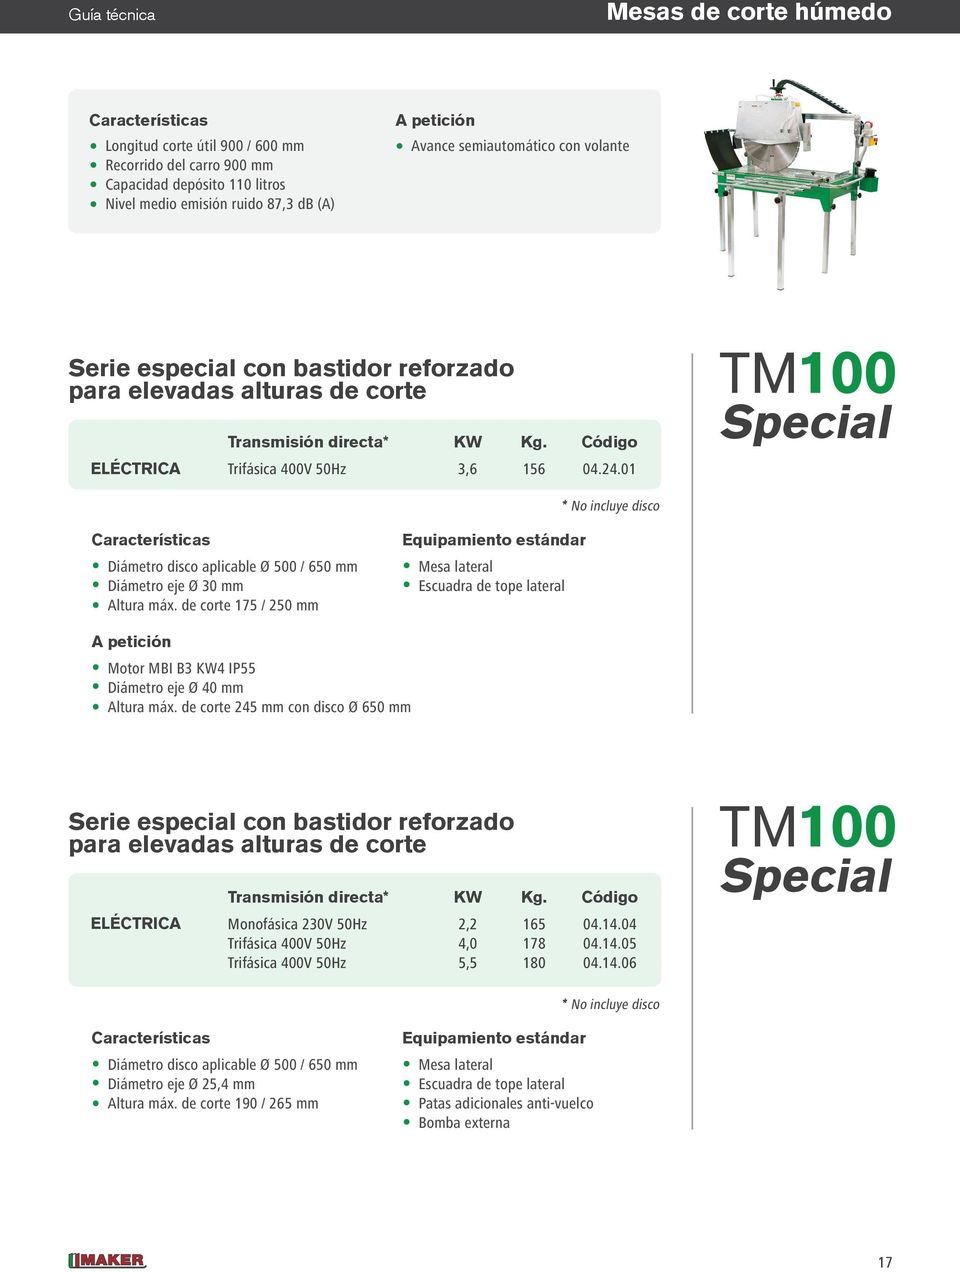 01 TM100 Special * No incluye disco Diámetro disco aplicable Ø 500 / 650 mm Diámetro eje Ø 30 mm Altura máx.